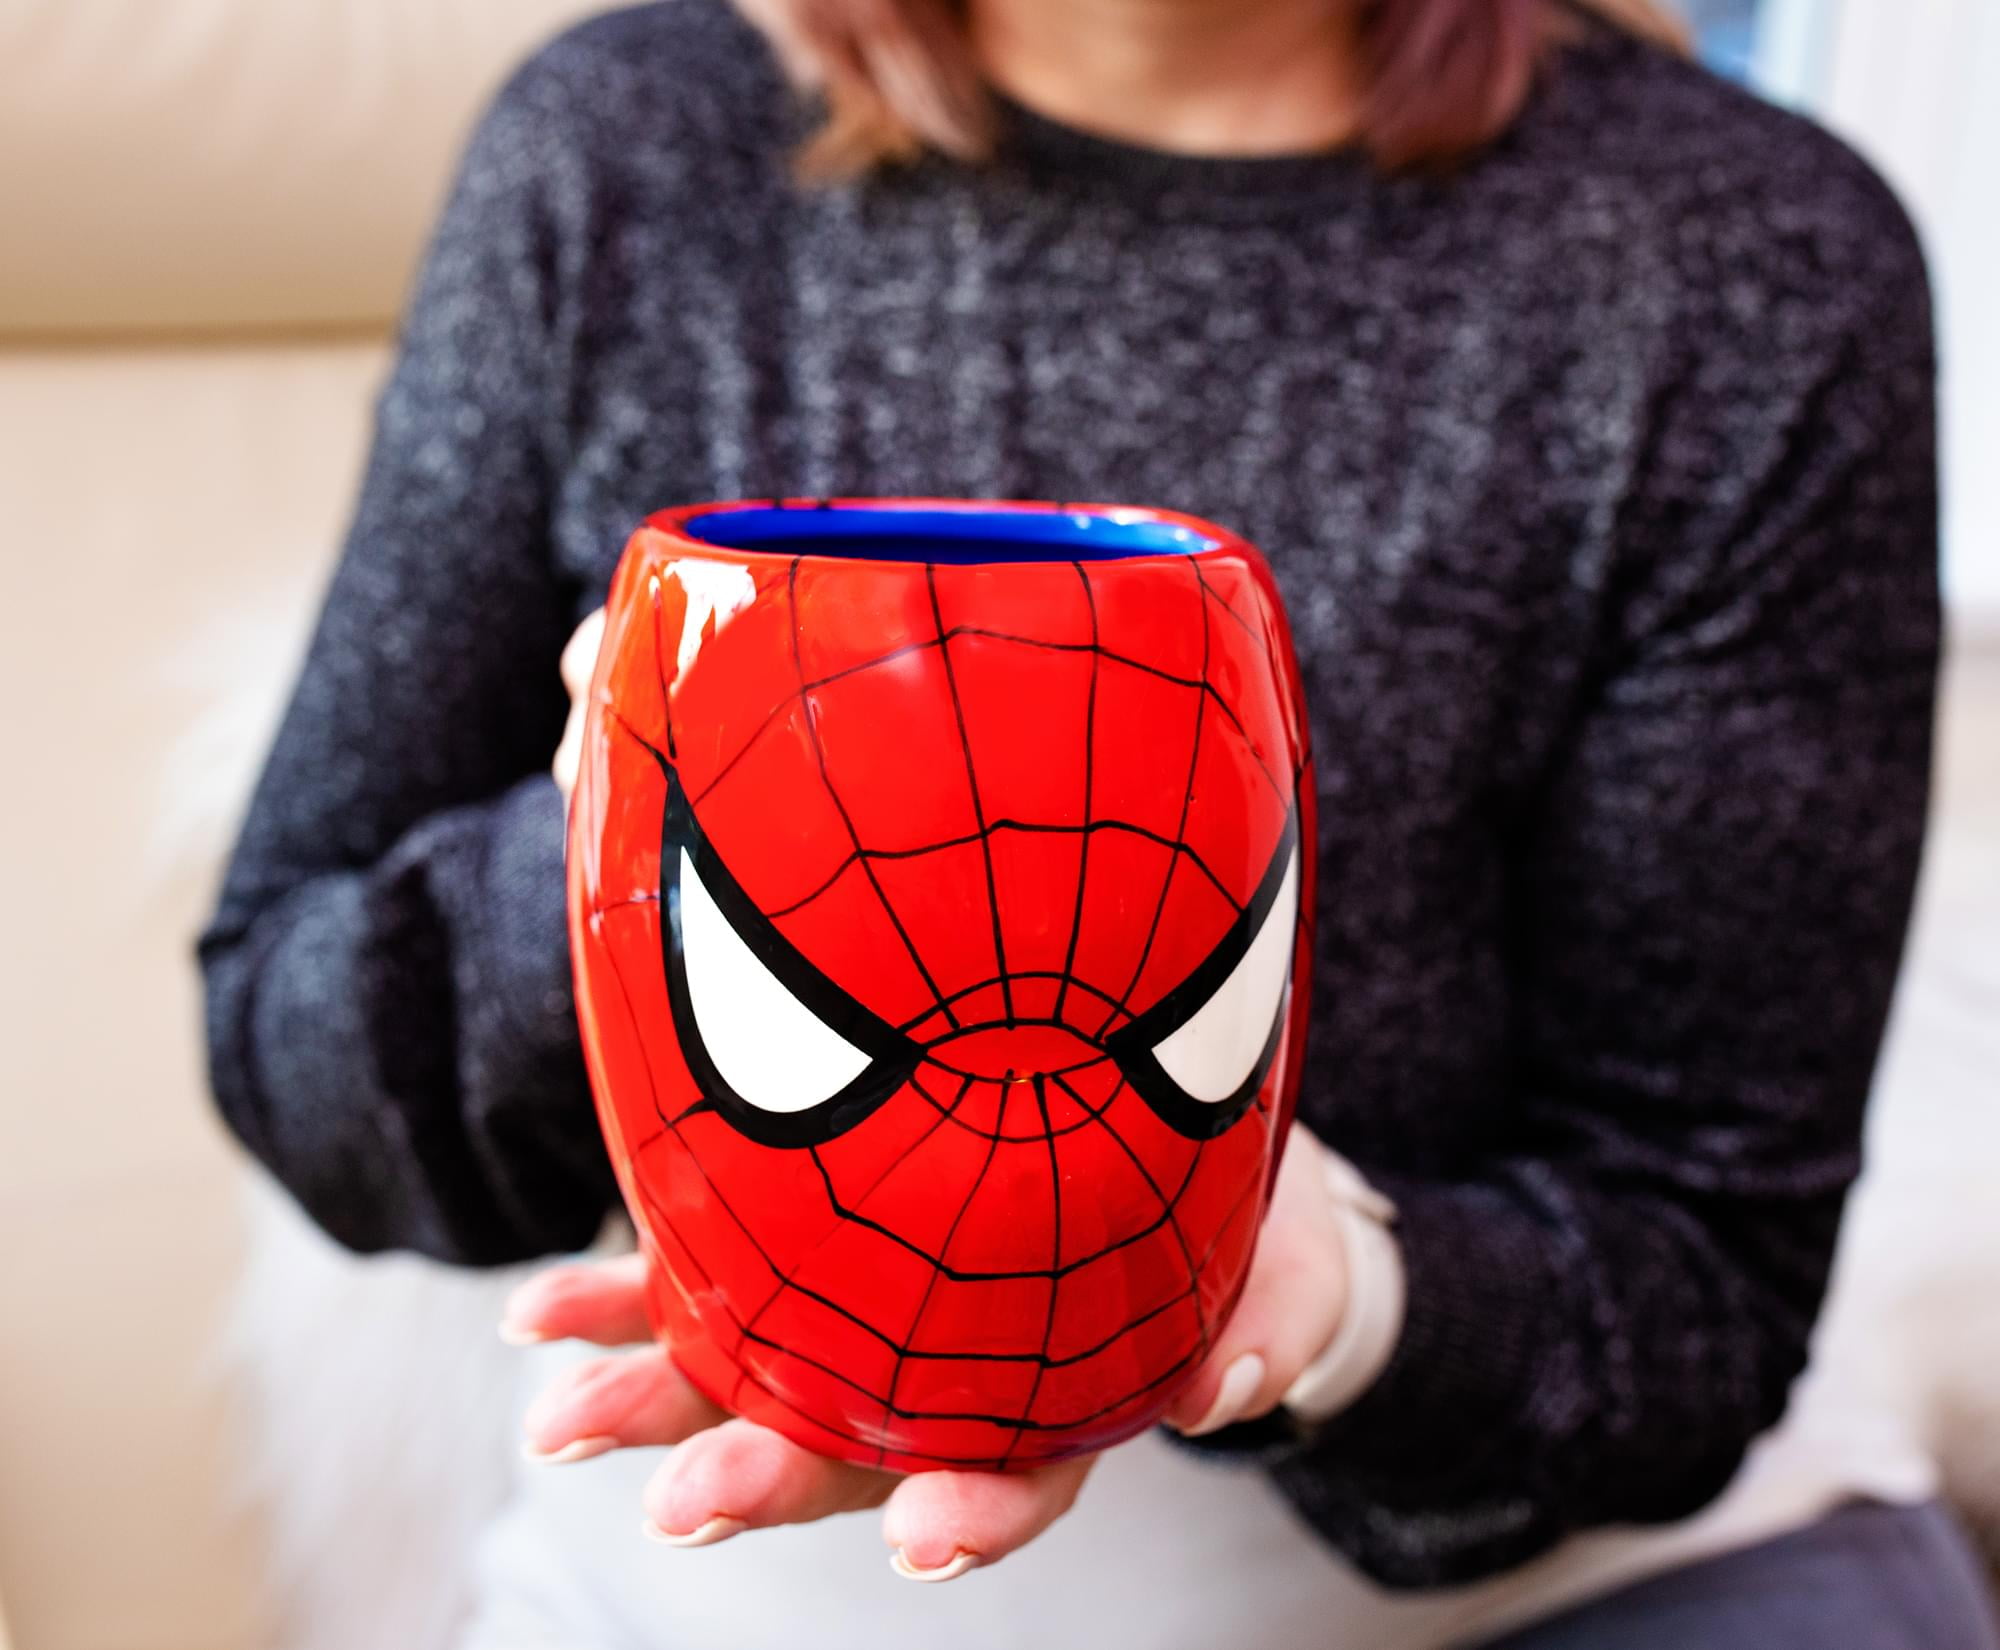  Marvel Spider-Man Sculpted Ceramic Mug, 20 fluid